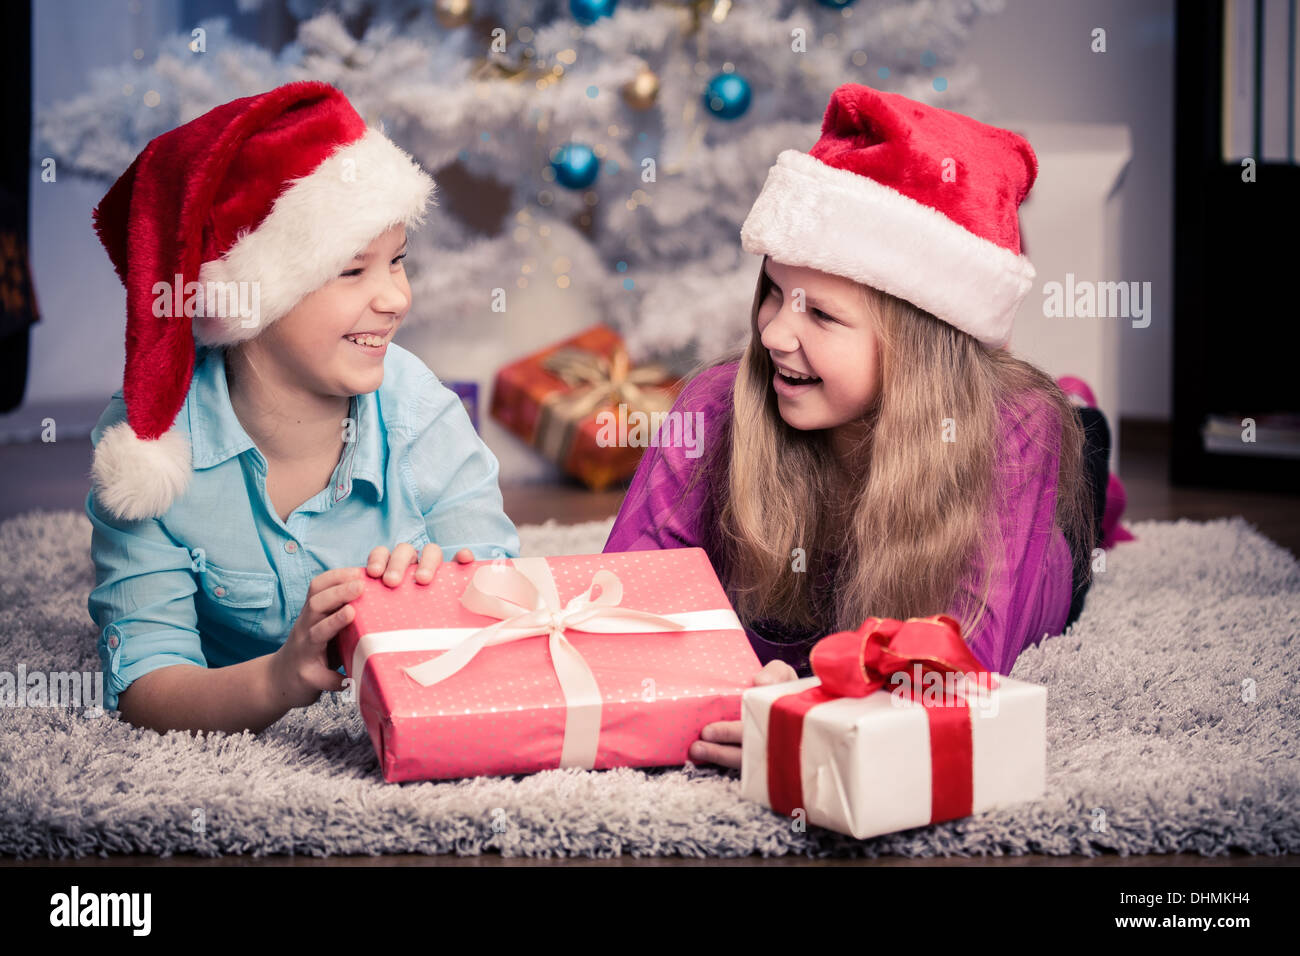 Regali Di Natale Sorella.Sorella Adolescente Come Ottenere I Regali Di Natale Foto Stock Alamy